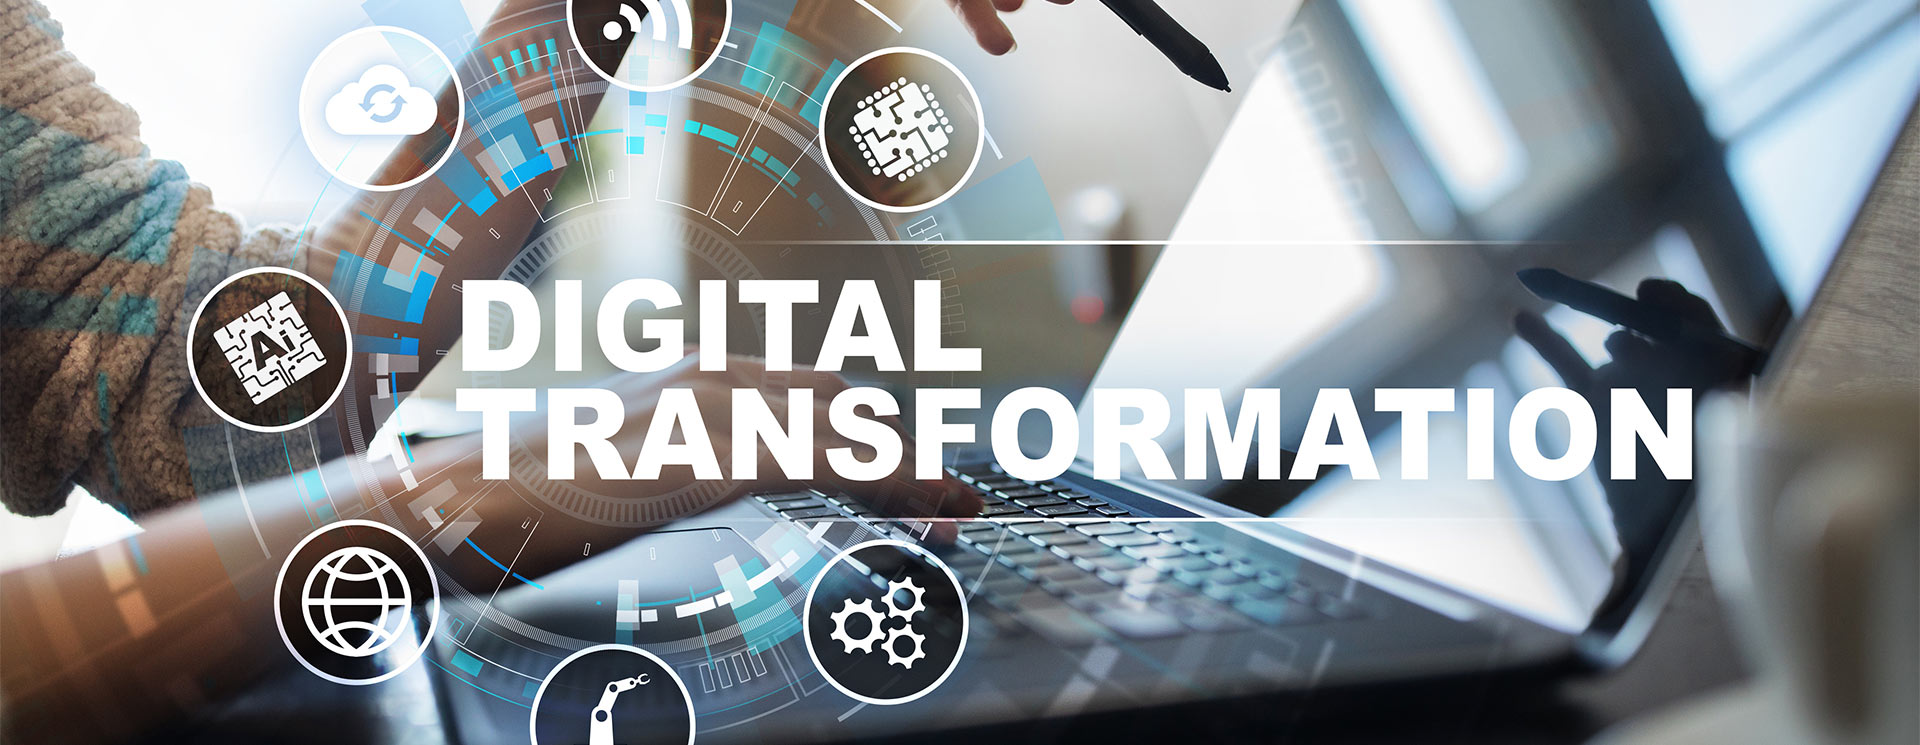 Digital Transformation Tools